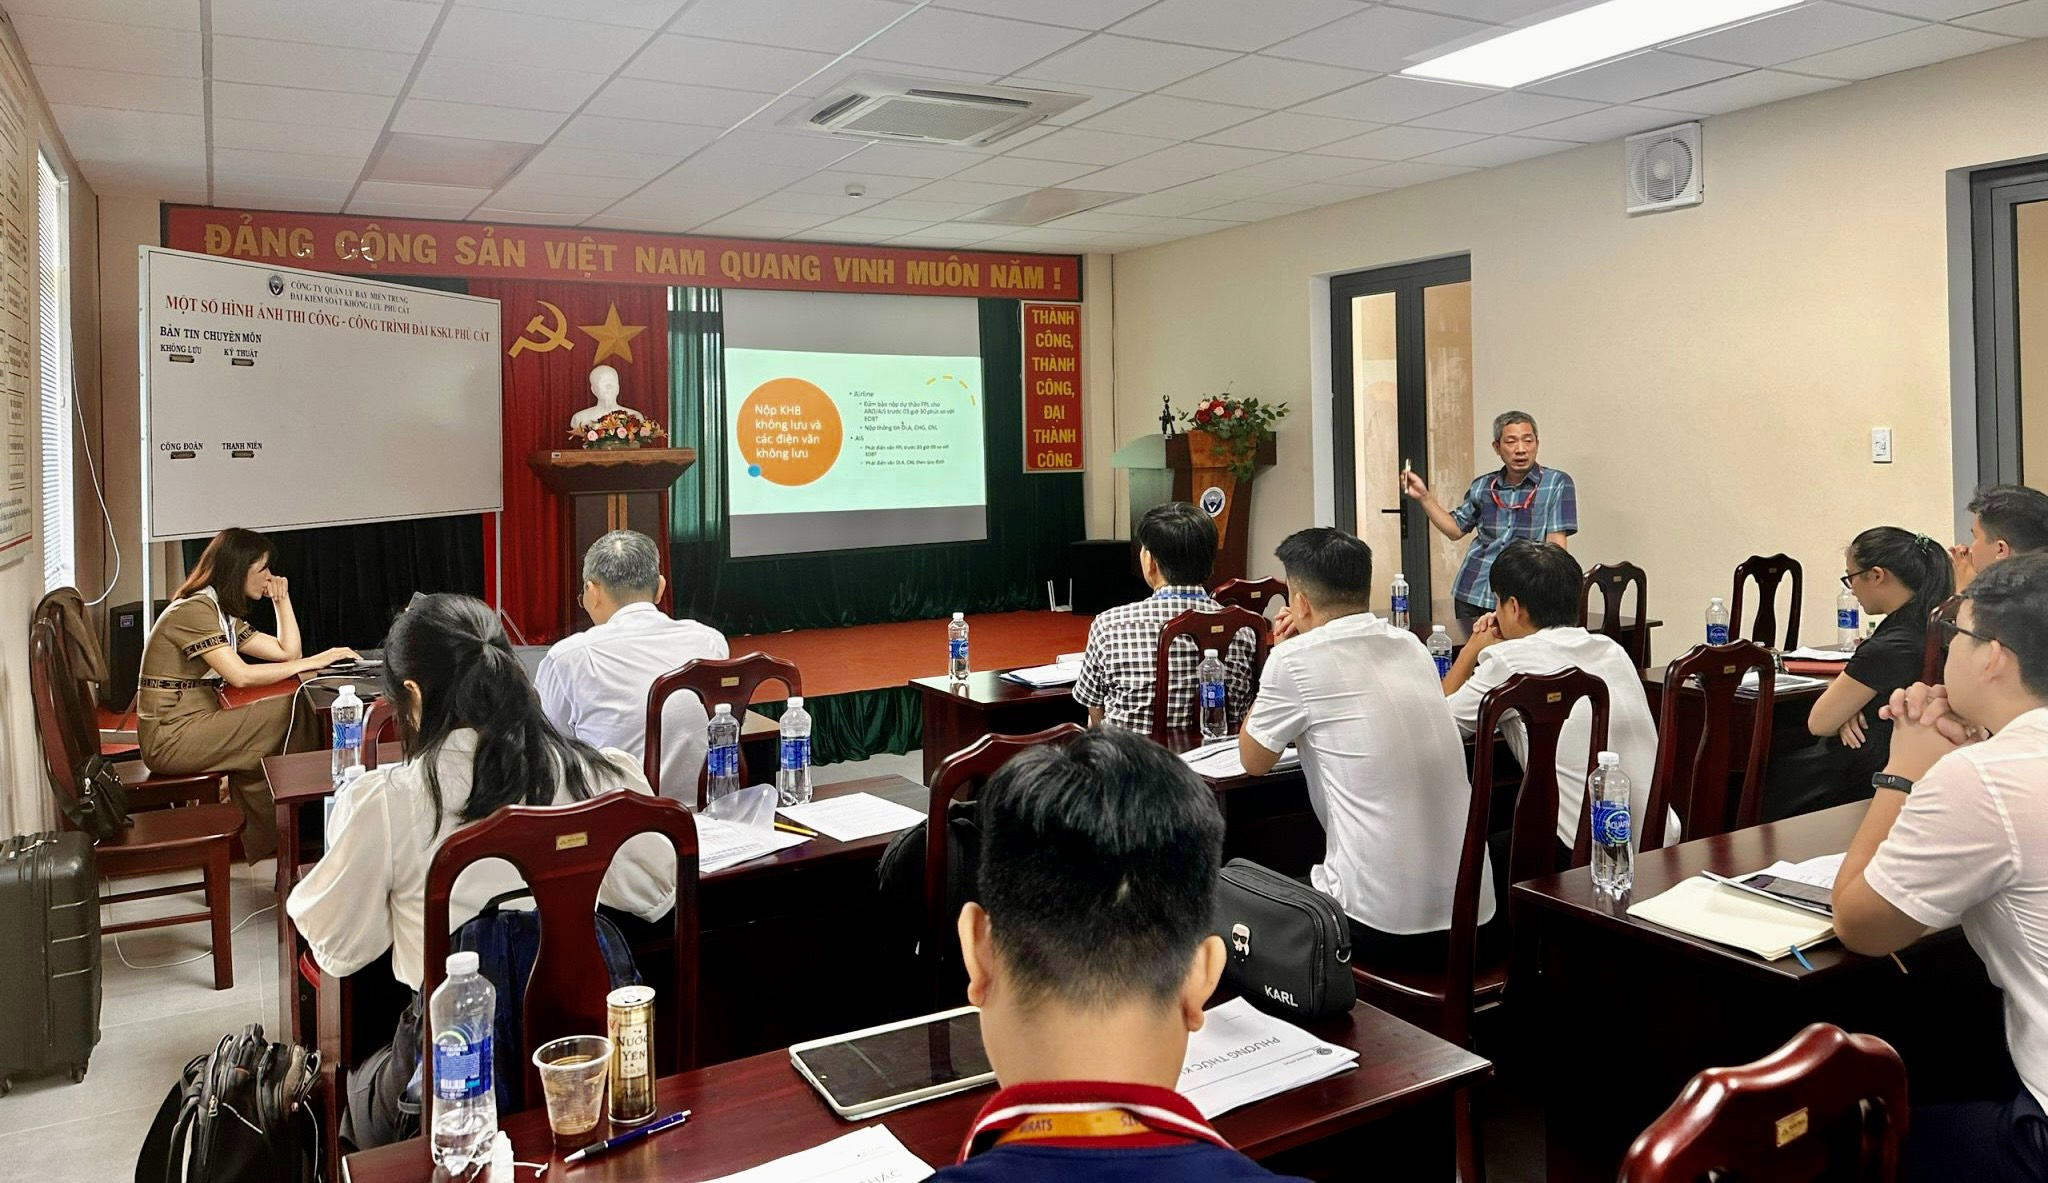 Hội thảo triển khai áp dụng Phương thức khai thác ATFM đa điểm nút tại Việt Nam tại Đài Kiểm soát không lưu Phù Cát và Tuy Hoà